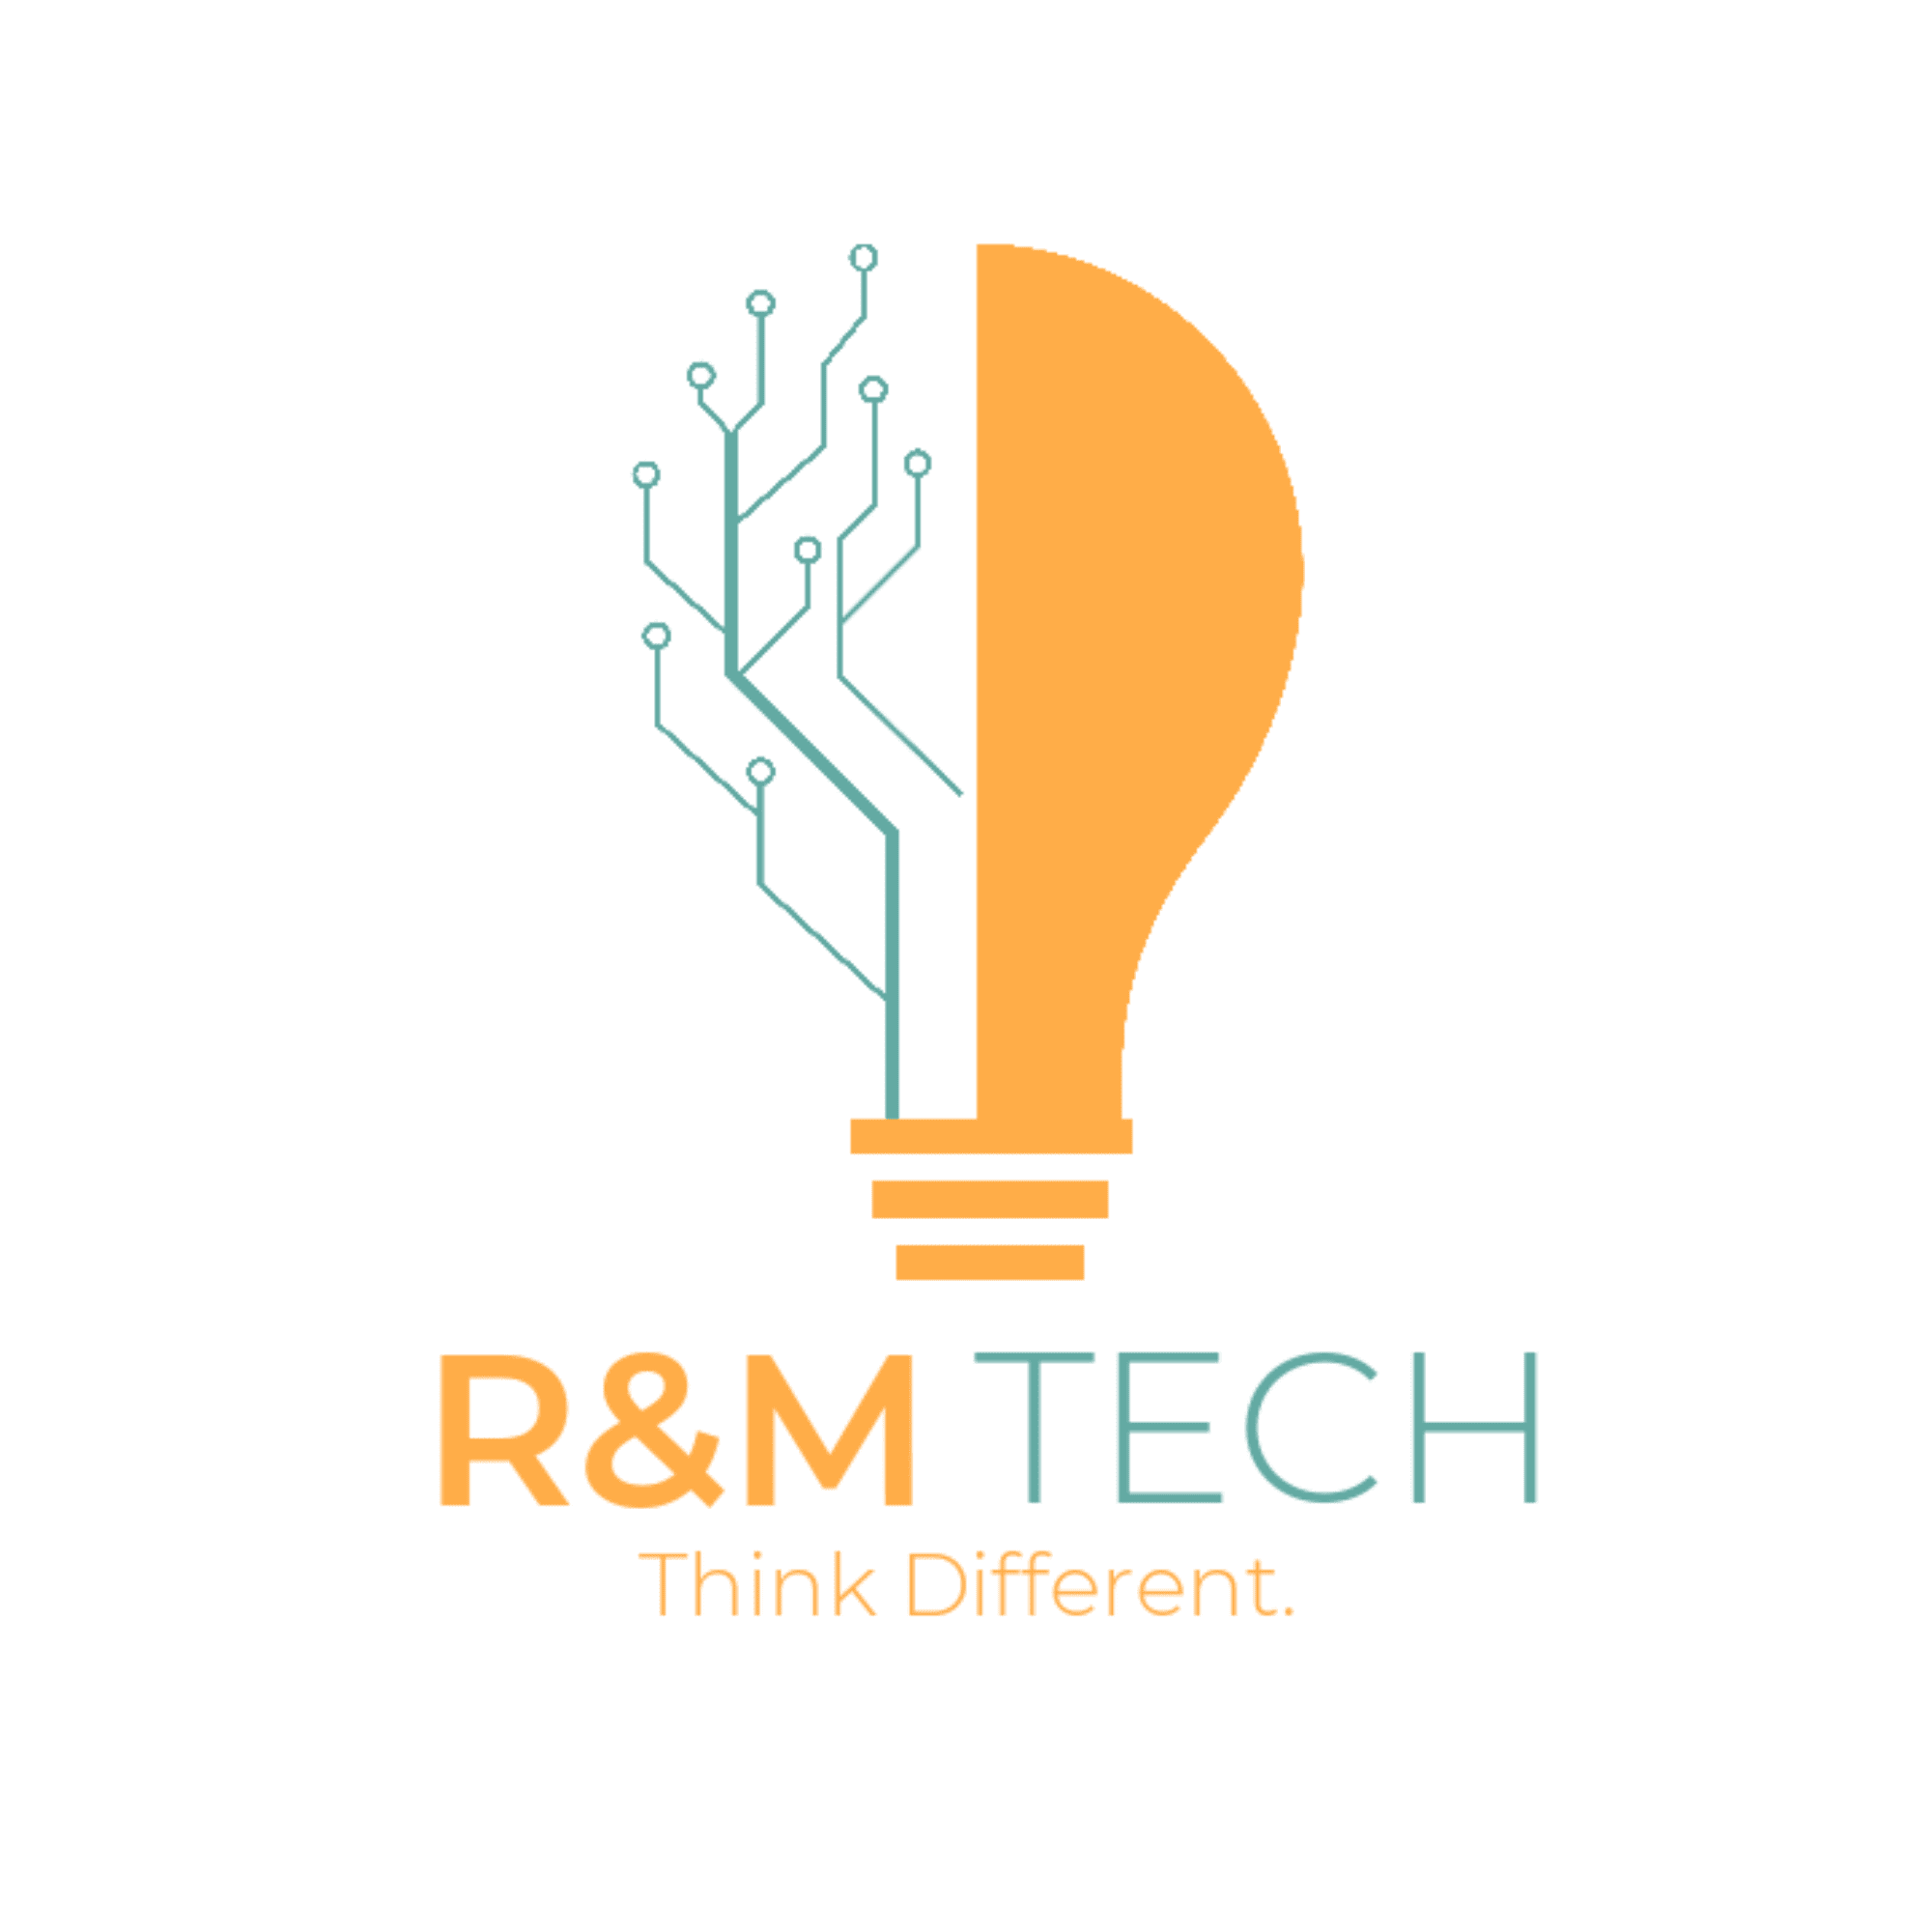 R&M Tech